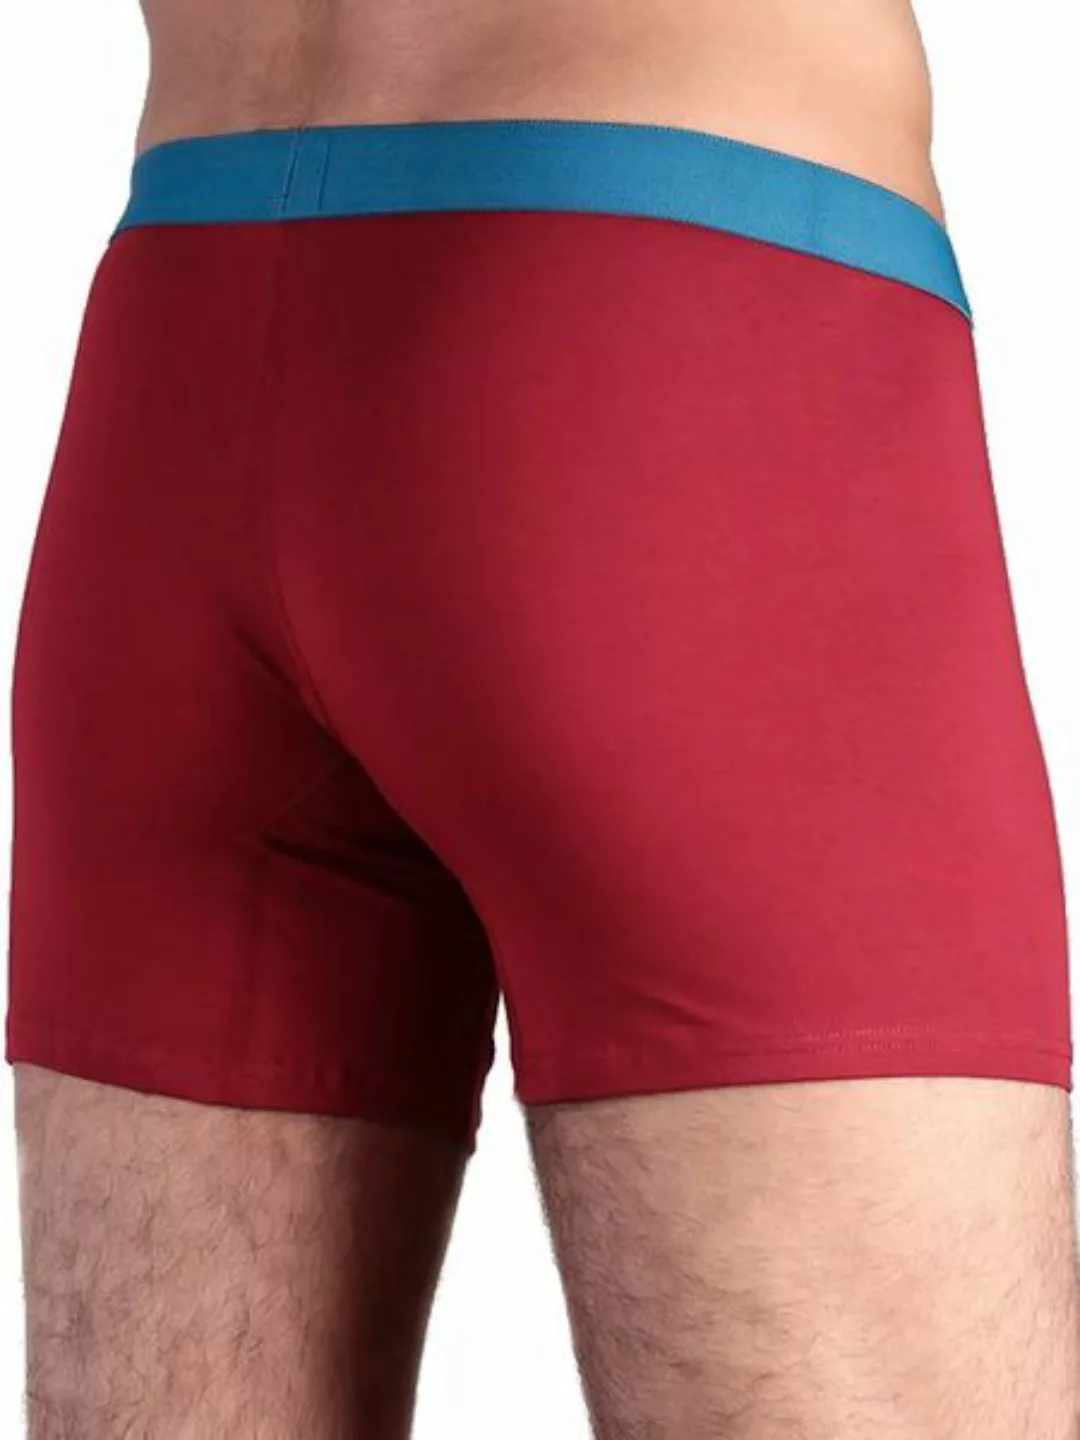 Herren Boxershorts 12 Farben Bio-baumwolle Unterhose Mit Eingriff günstig online kaufen